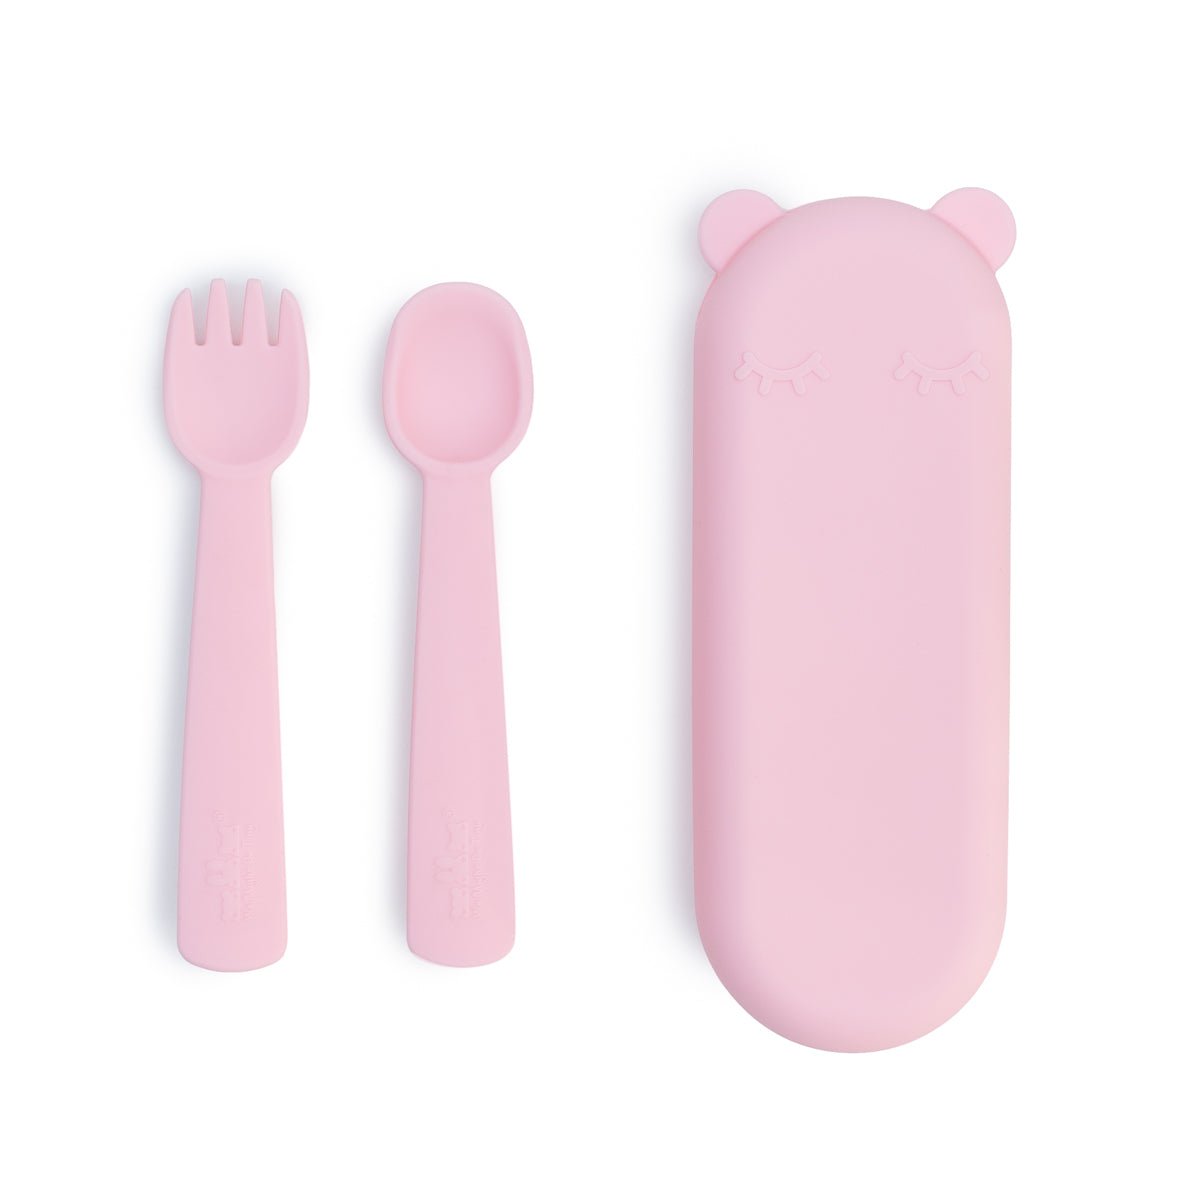 Feedie® Fork & Spoon Set - Powder Pink